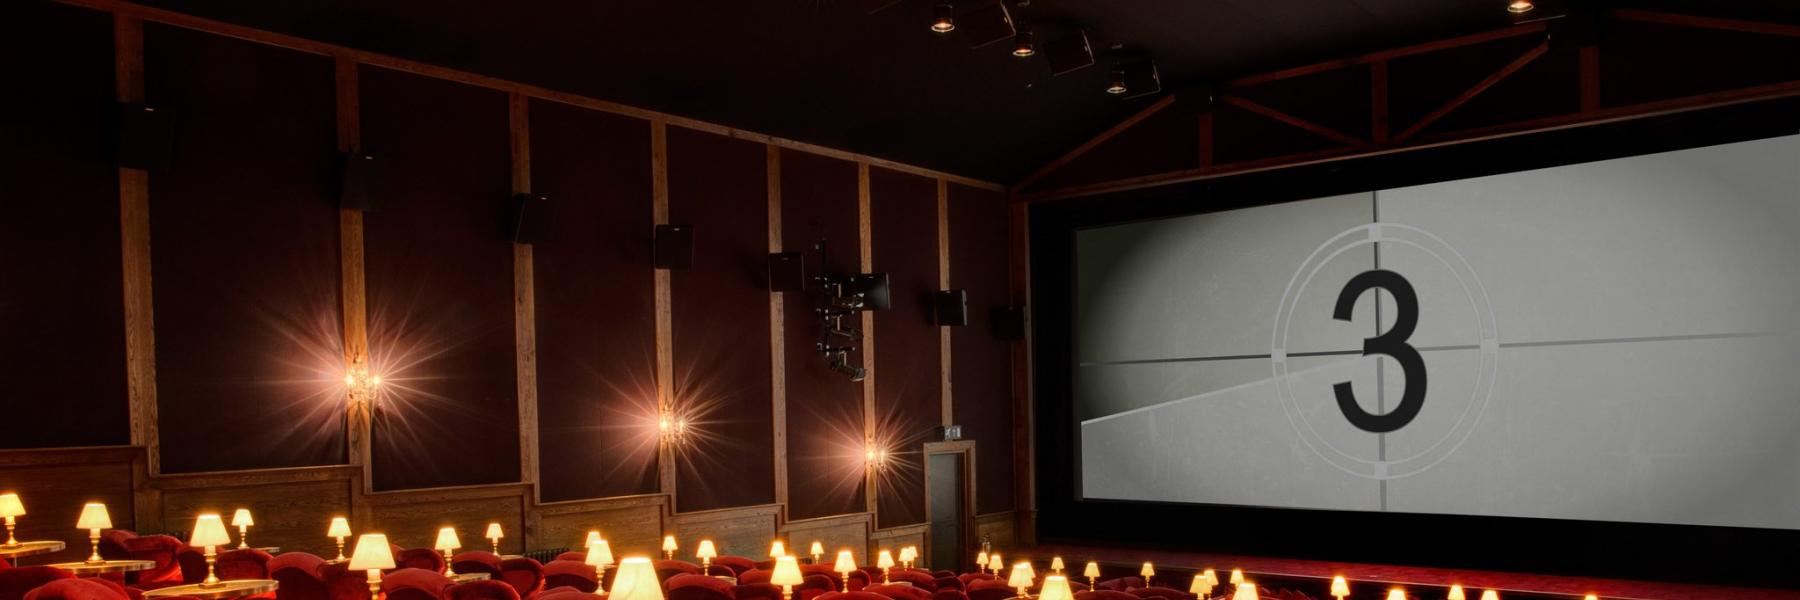 مركز السينما العربية ينطلق في سوق مهرجان كان الافتراضي